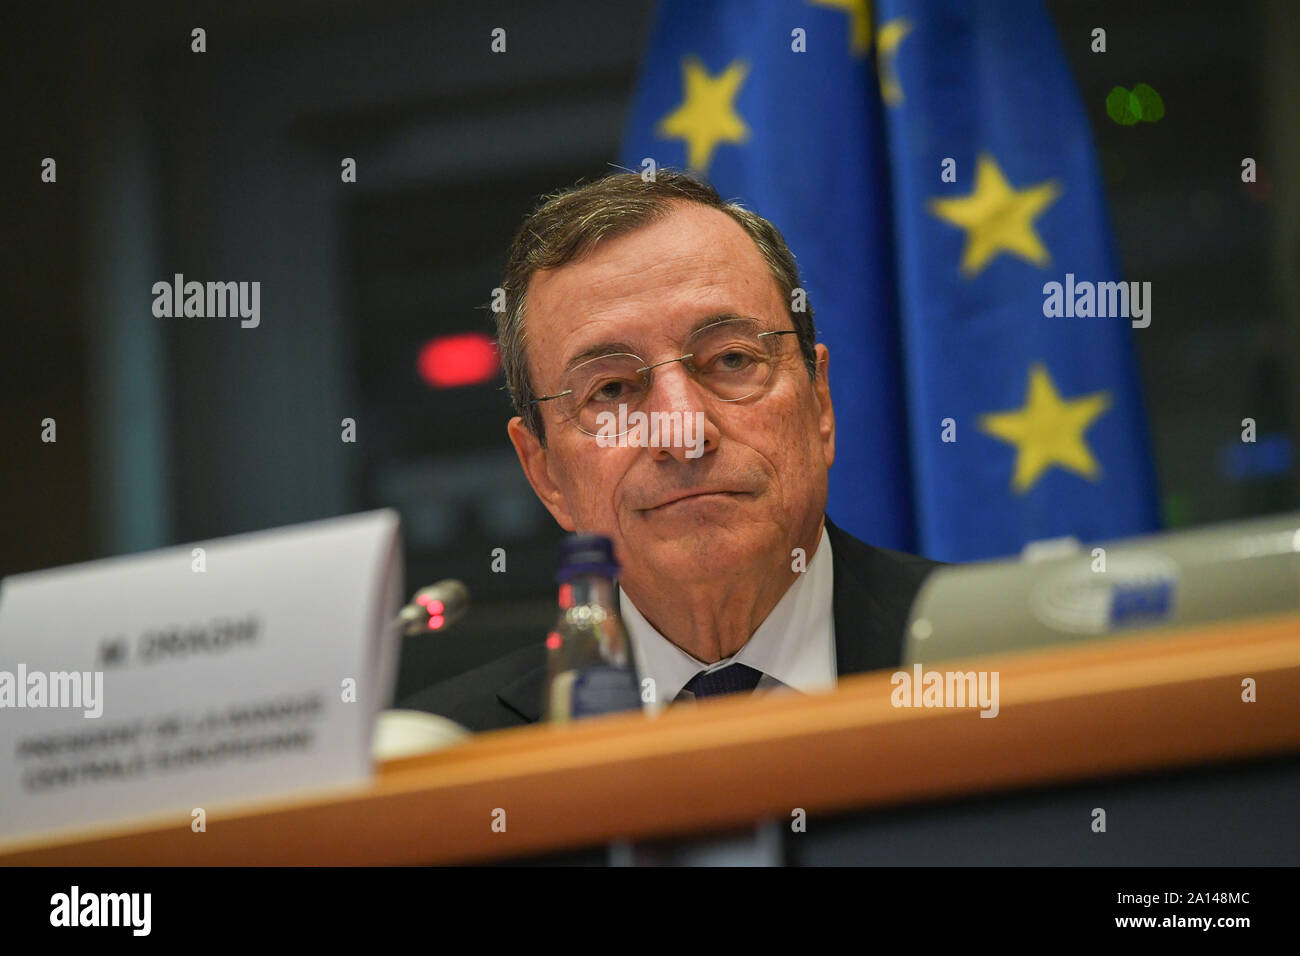 Brüssel, Belgien. 23 Sep, 2019. Mario Draghi, Präsident der Europäischen Zentralbank (EZB), nimmt an den monetären Dialog mit der Europäischen Wirtschafts- und Währungsausschuss des Europäischen Parlaments in Brüssel, Belgien, Sept. 23, 2019. Credit: Riccardo Pareggiani/Xinhua Stockfoto